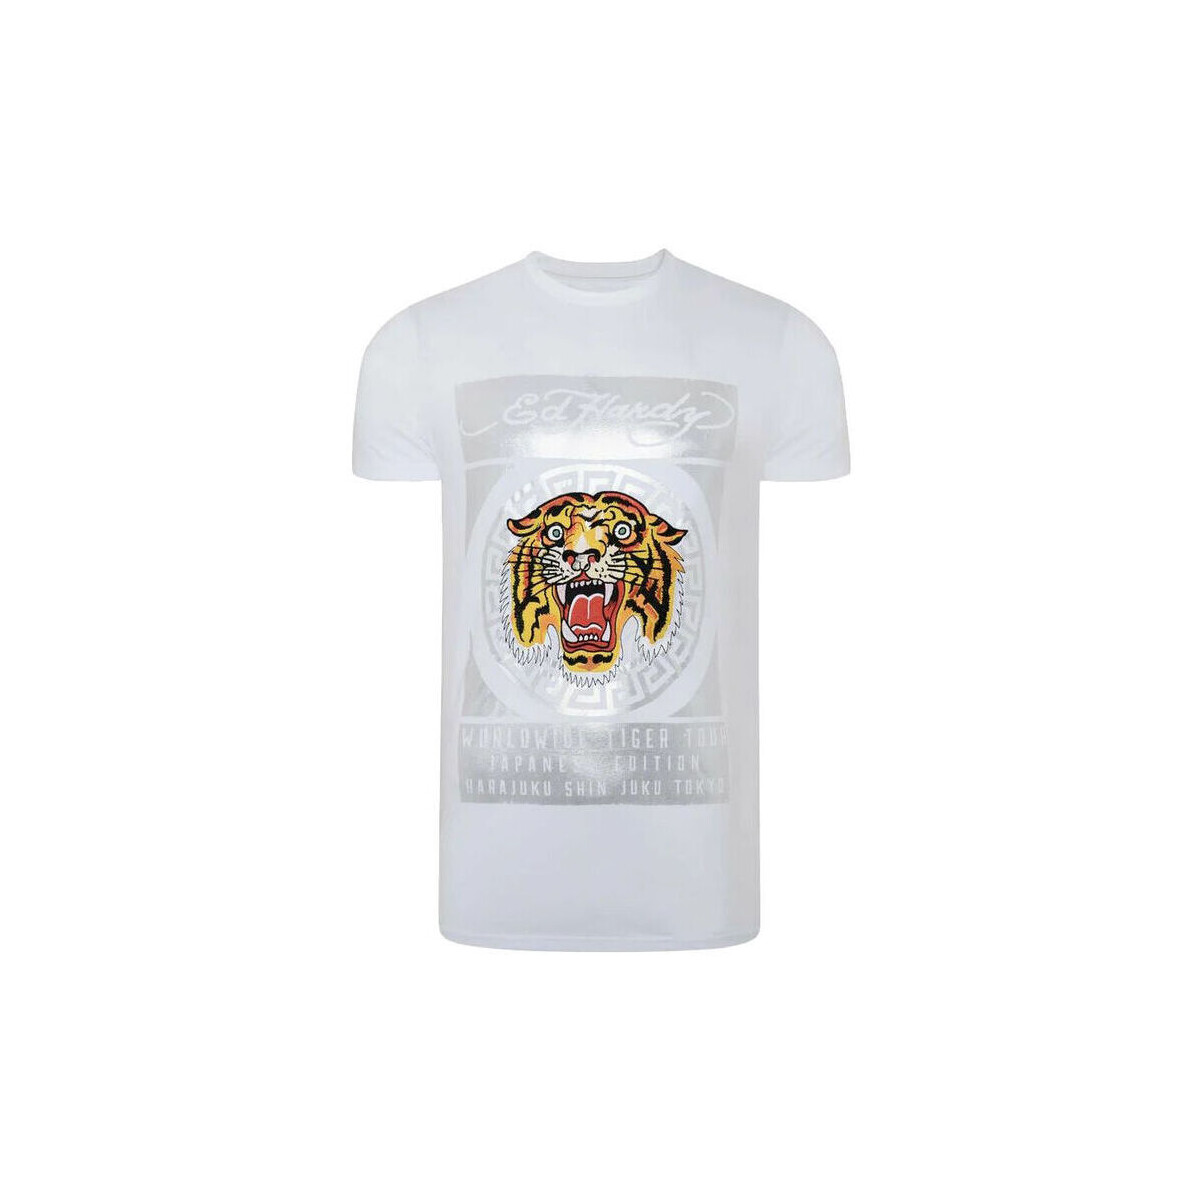 Textil Muži Trička s krátkým rukávem Ed Hardy Tile-roar t-shirt Bílá